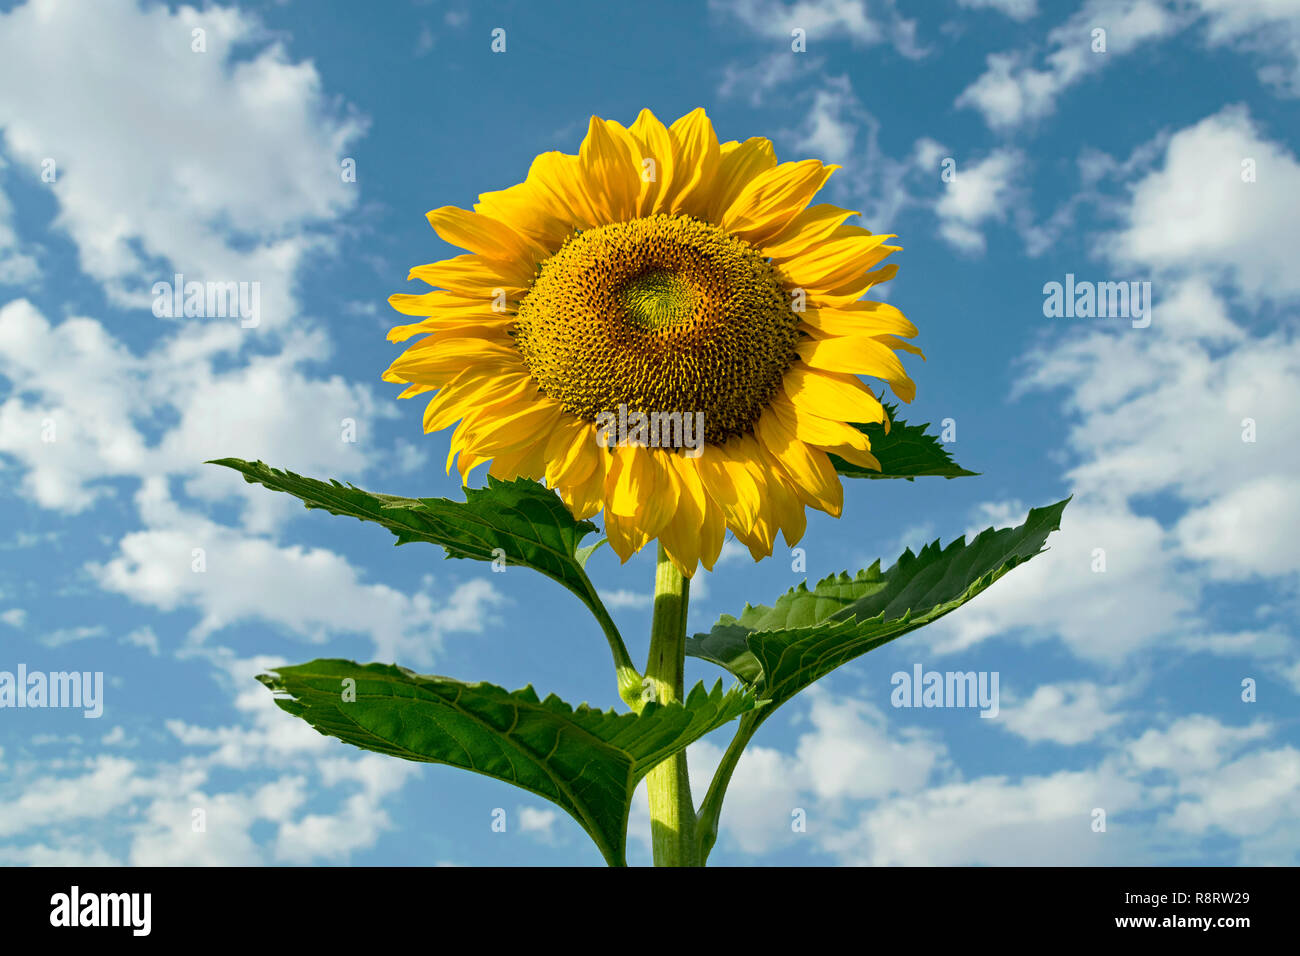 Eine riesige goldgelbe Sonnenblume und Blätter, die nach der Himmel gegen einen schönen teilweise bewölkten Himmel Stockfoto